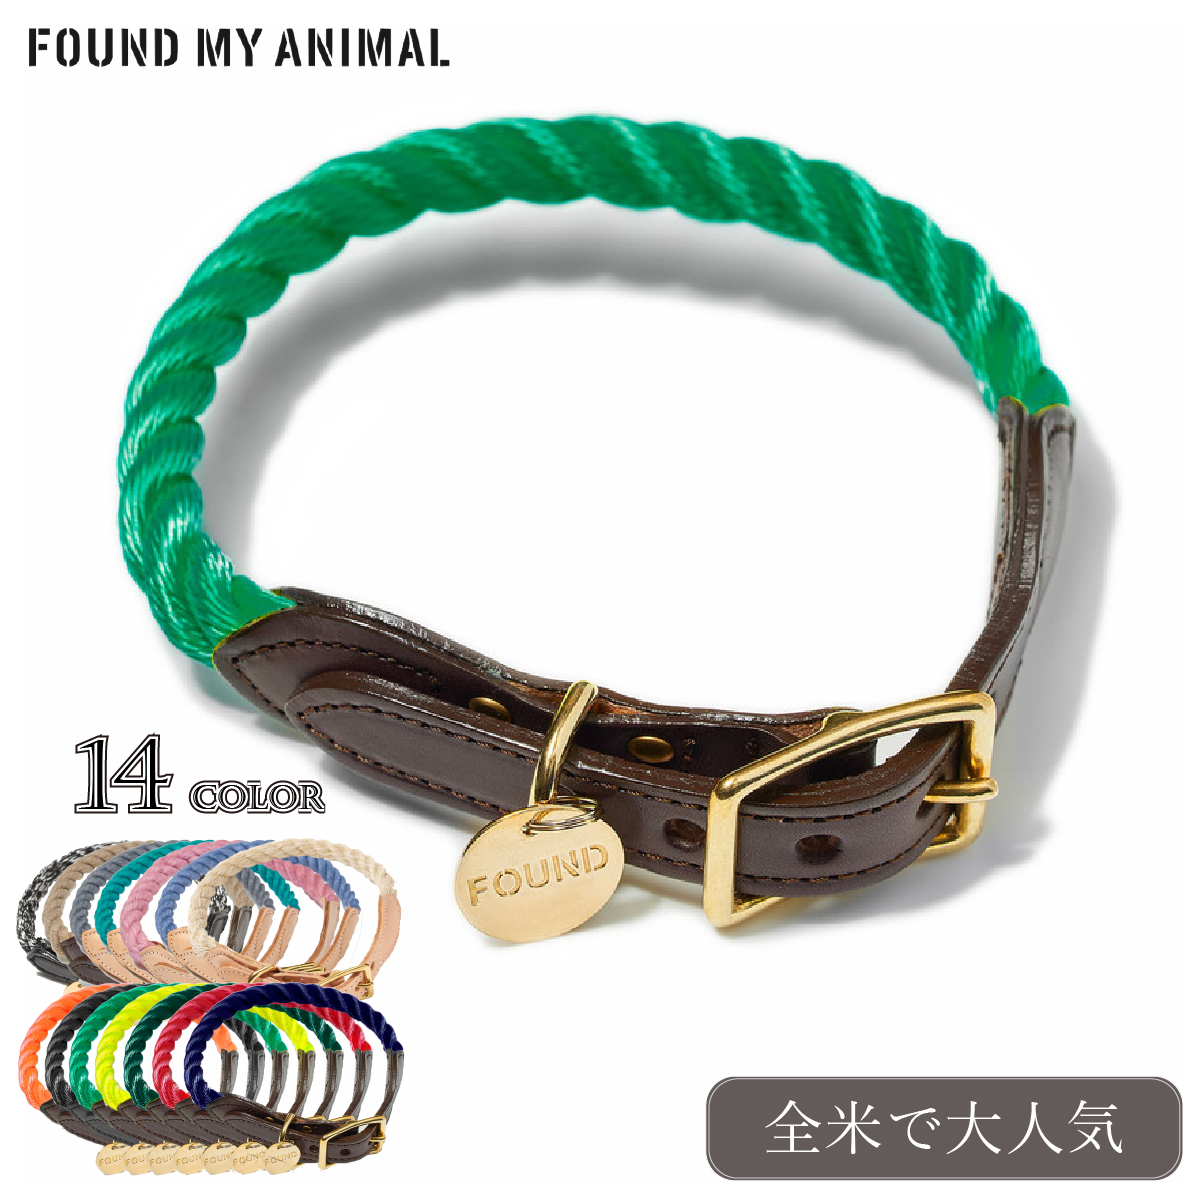 最安 Found My Animal ファウンドマイアニマル Rope Dog Color マリーンロープモチーフ 犬用 首輪 全14色 柔らかい Neweurasia Info